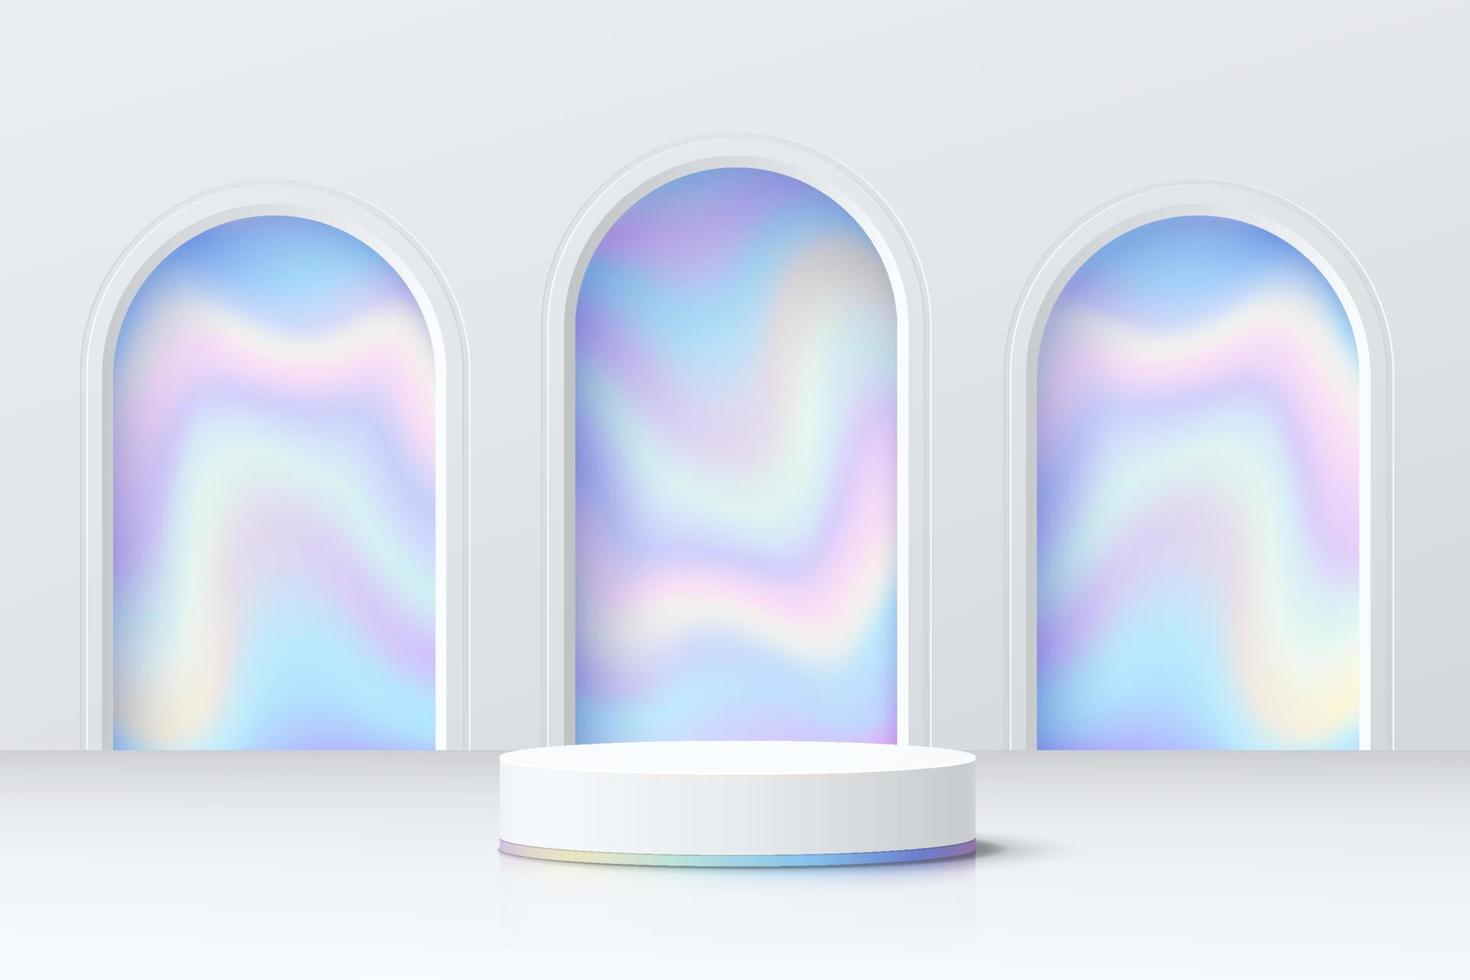 salle 3d abstraite avec podium de piédestal de cylindre blanc réaliste et hologramme bleu dans la fenêtre en forme d'arche. scène minimale pour la présentation de l'affichage du produit. plate-forme géométrique vectorielle. scène pour vitrine. vecteur